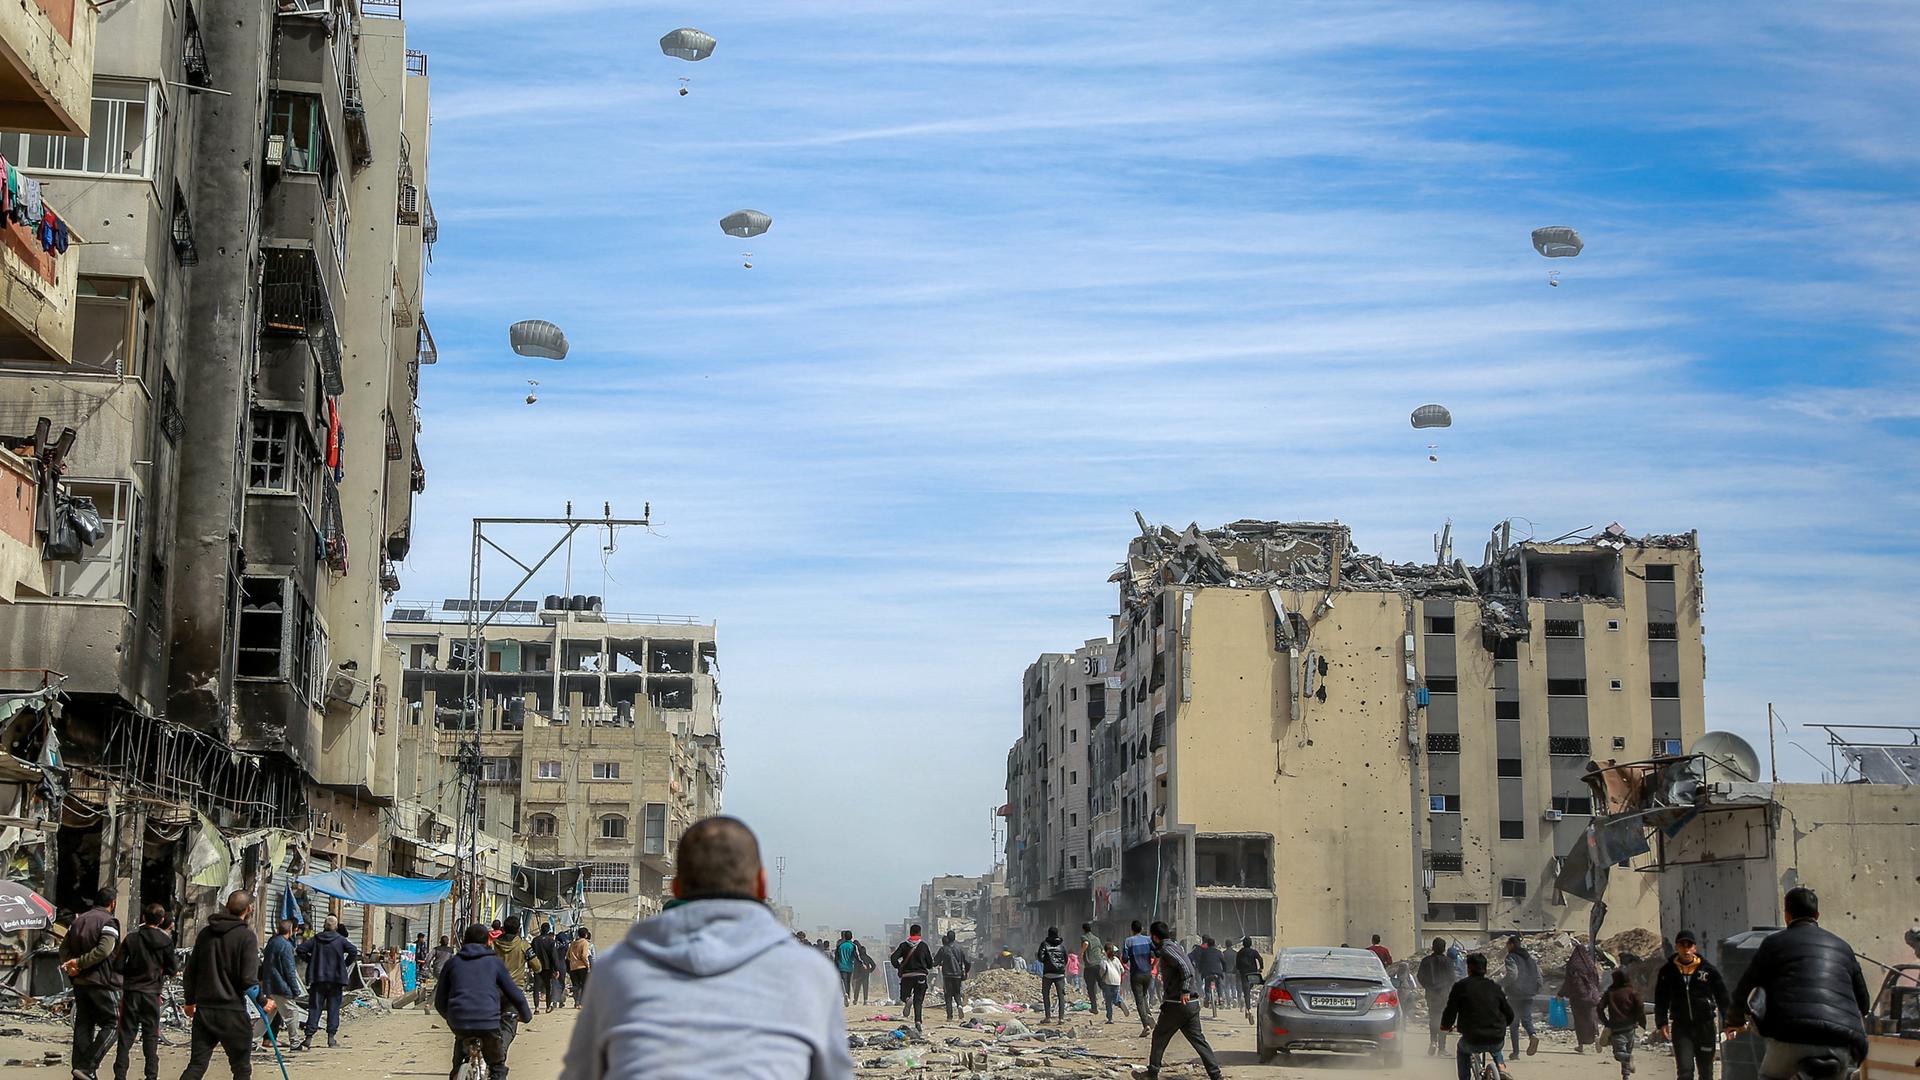 Zahlreiche Palästinenser rennen über eine vom Krieg zerstörte Straße in Richtung einiger Hilfsgüter, die an Falschirmen befestigt vom Himmel in Richtung Erde schweben.